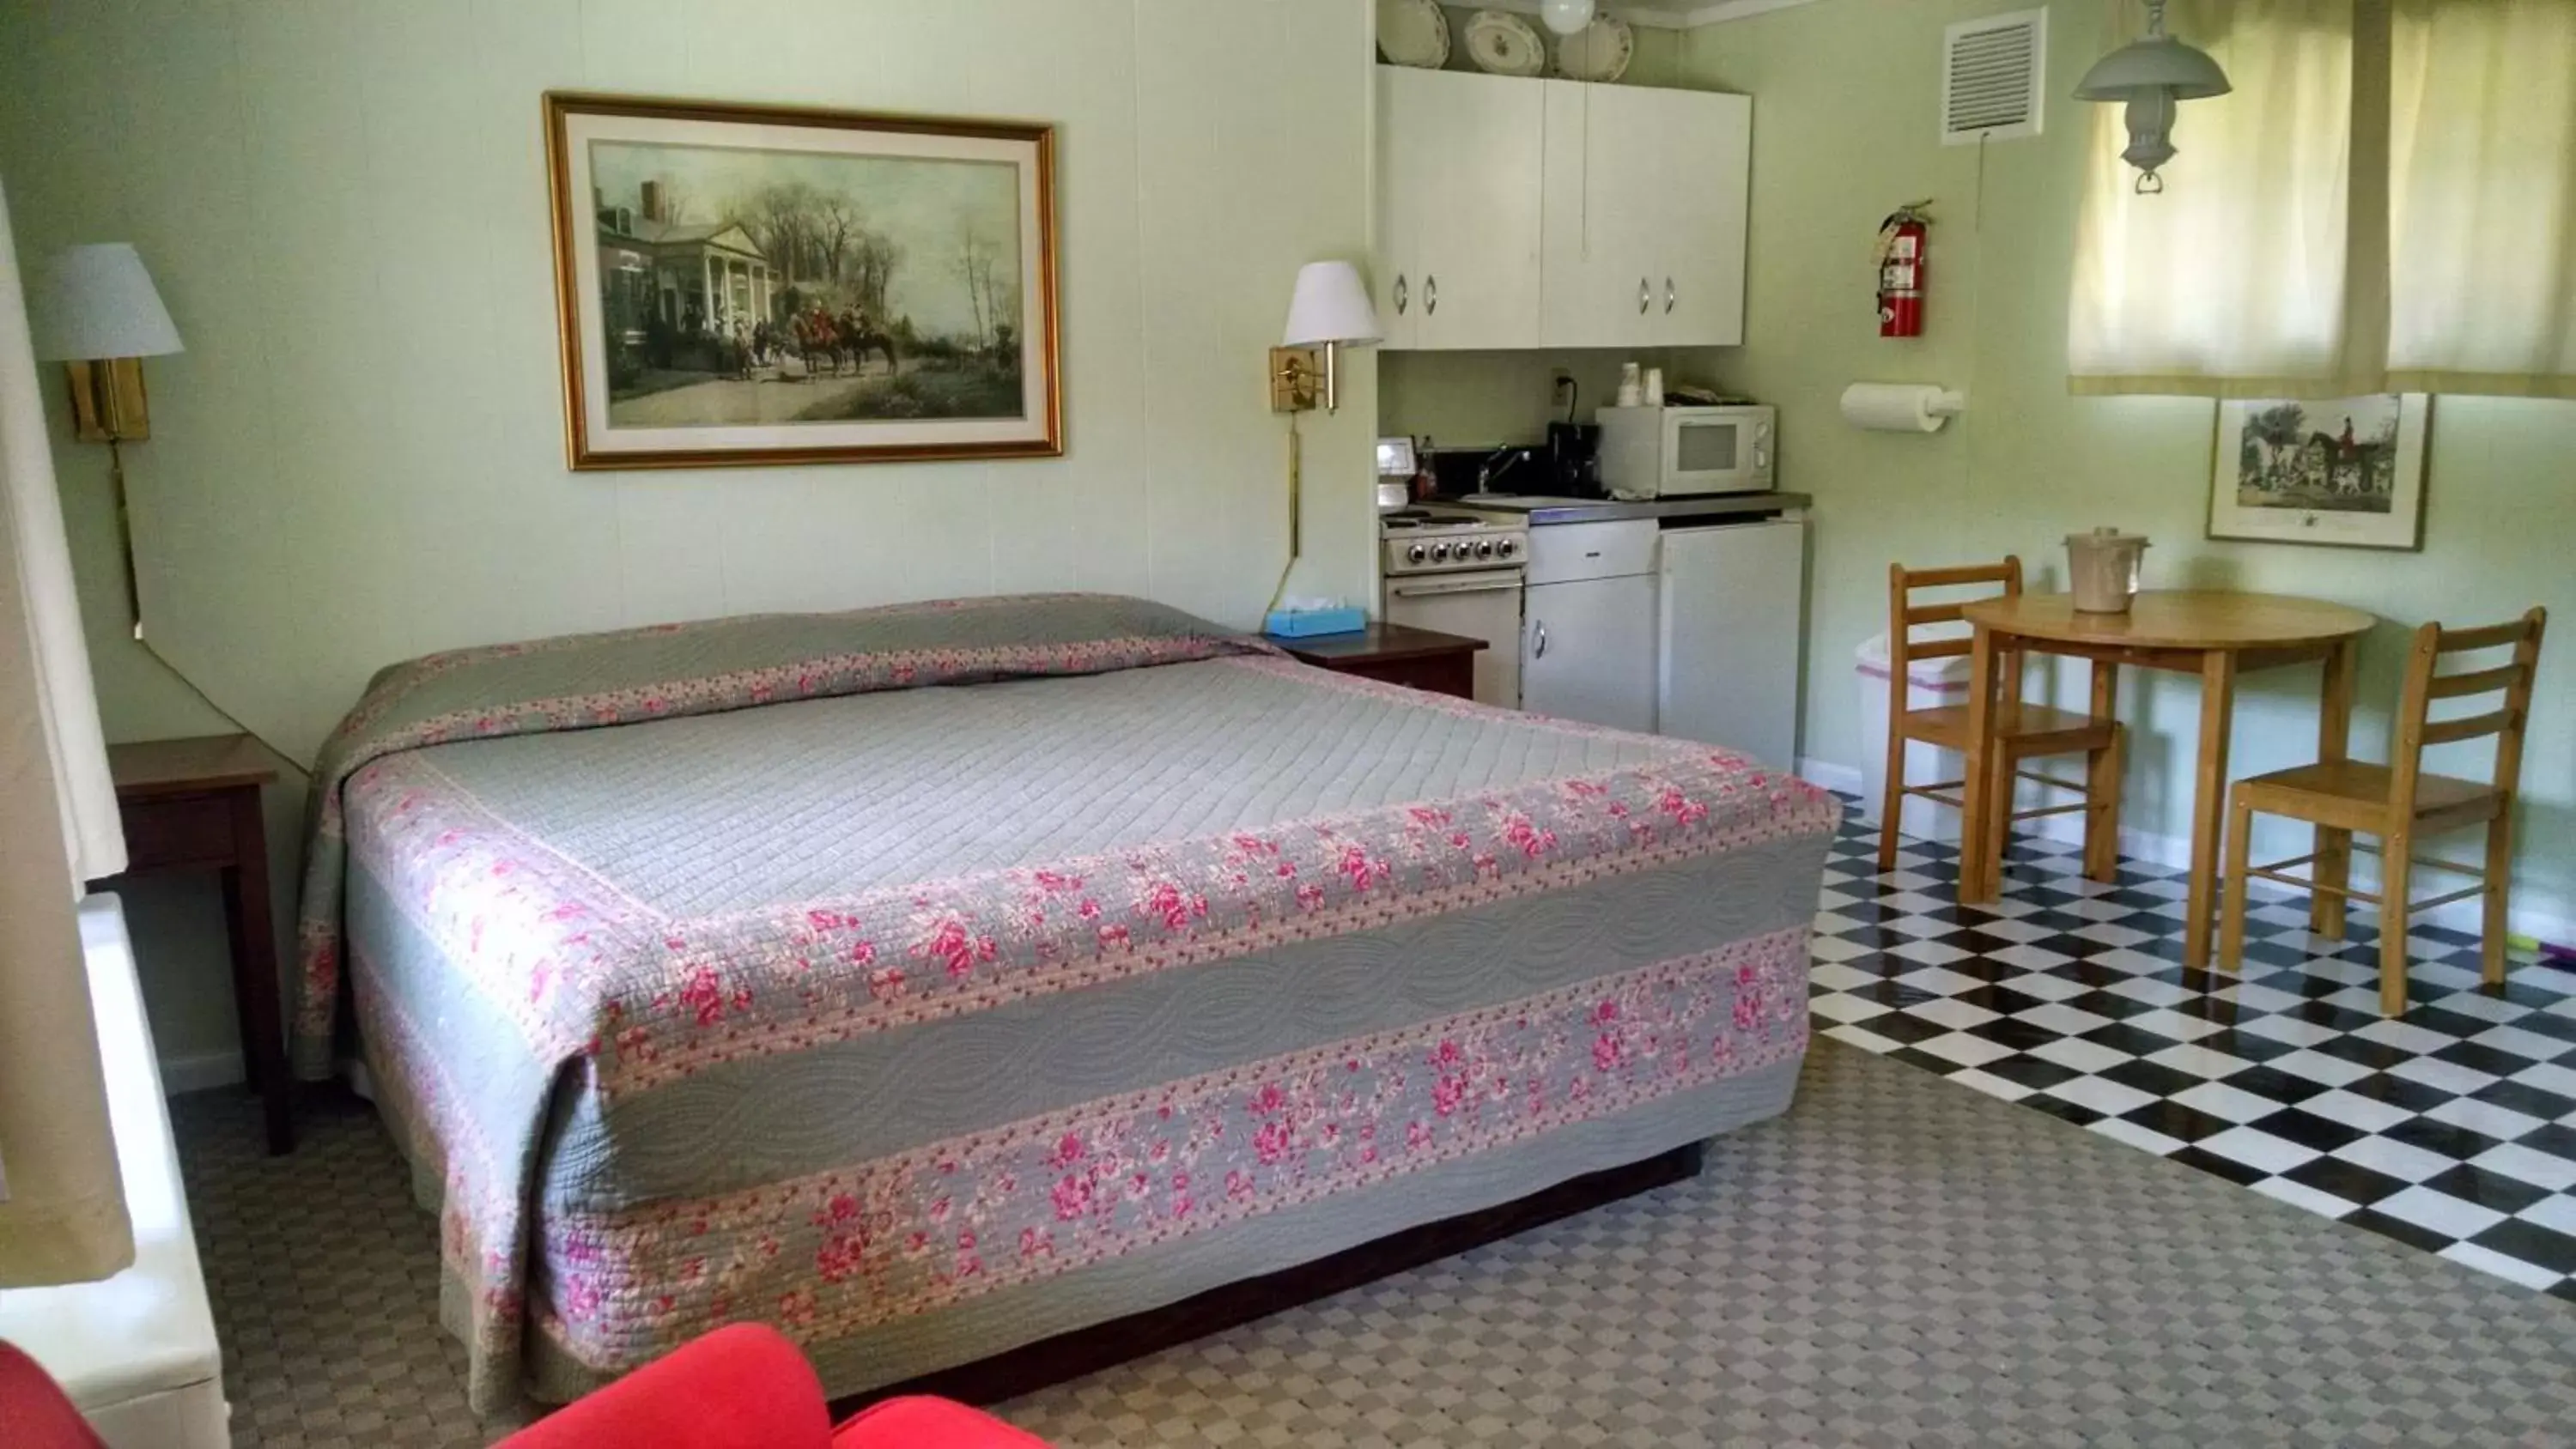 Bed, Room Photo in Roseloe Motel